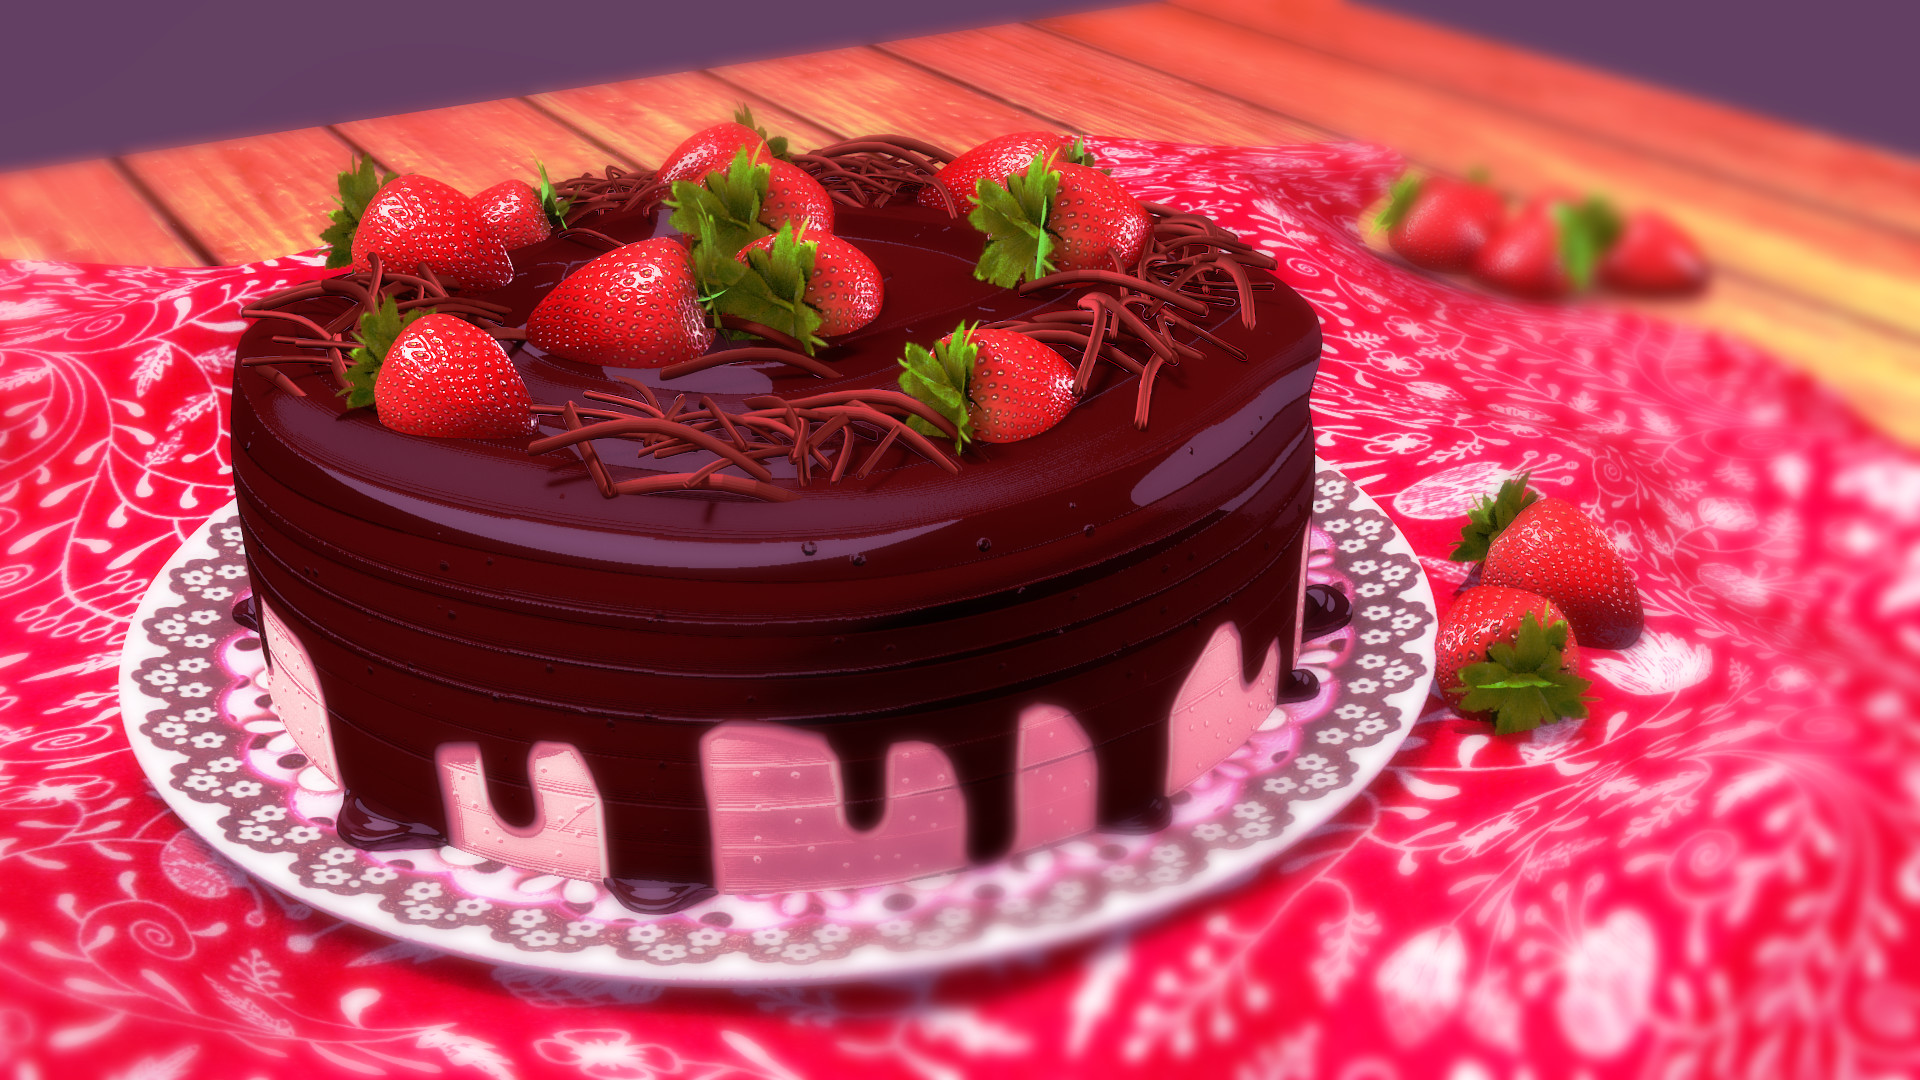 ArtStation - strawberry cake with chocolate - Torta de Morango com ...